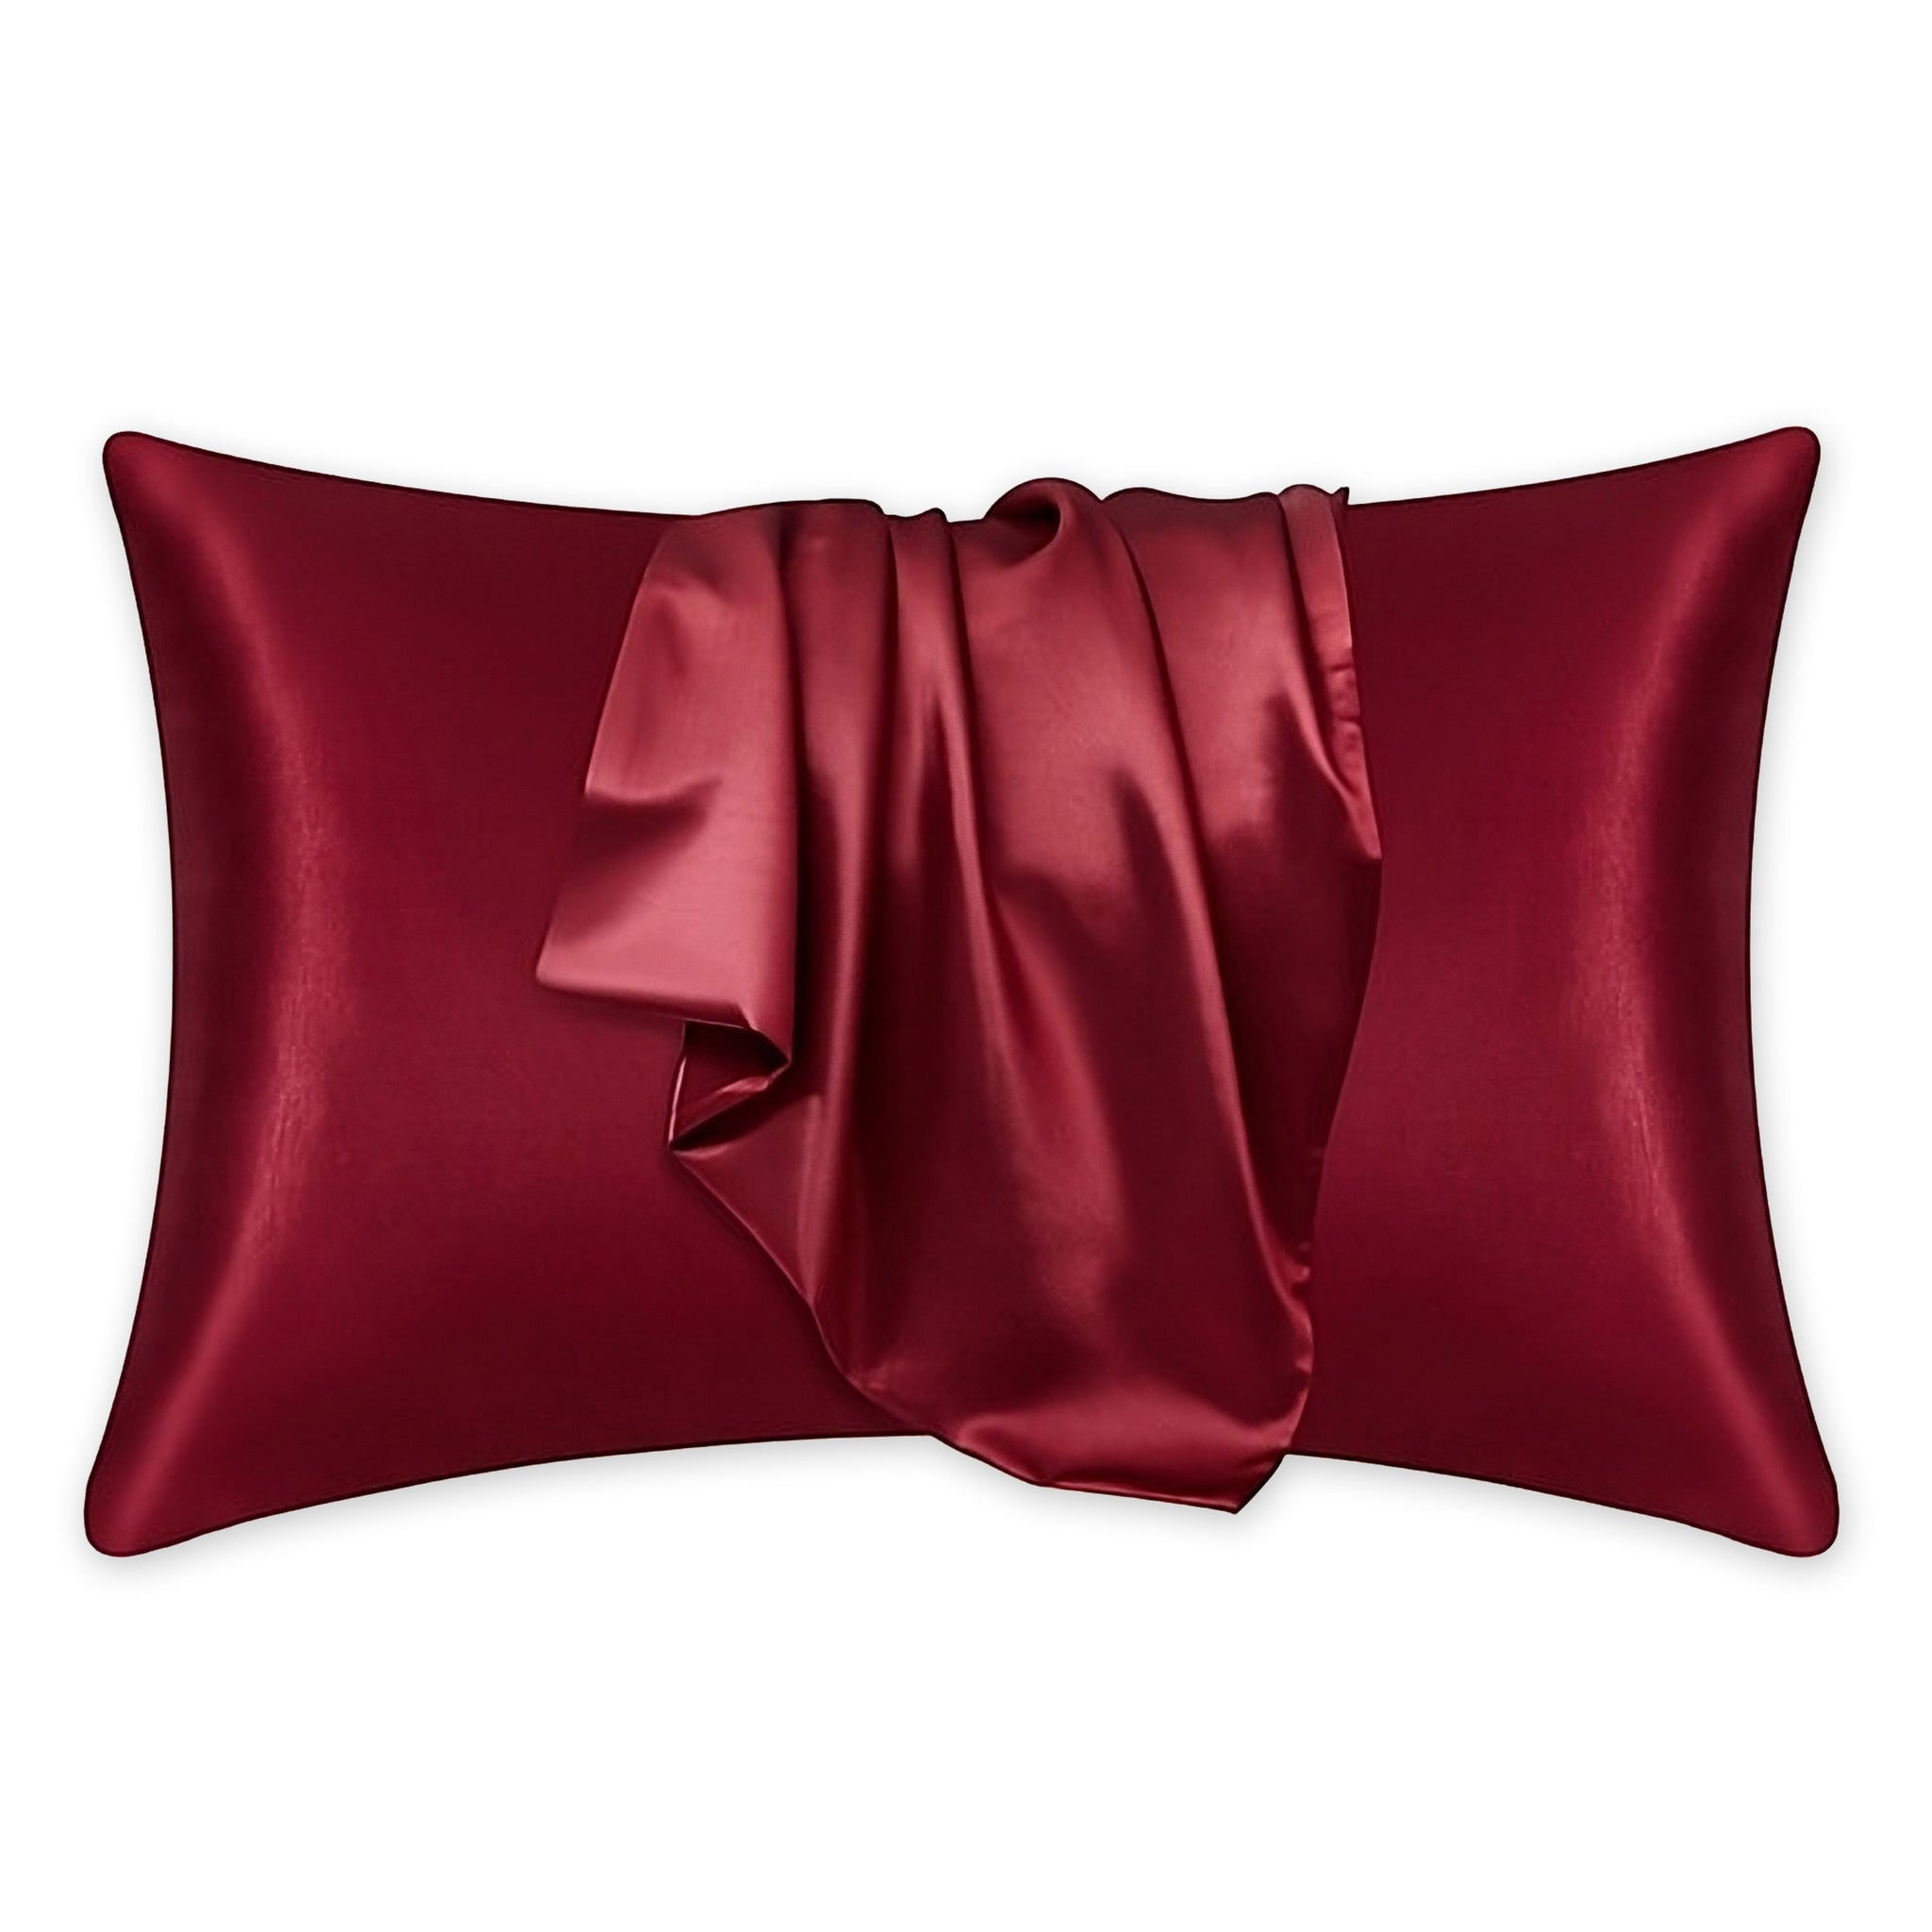 Satijnen kussensloop Rood 60 x 70 cm hoofdkussen formaat - Satin pillow case / Zijdezachte kussensloop van satijn